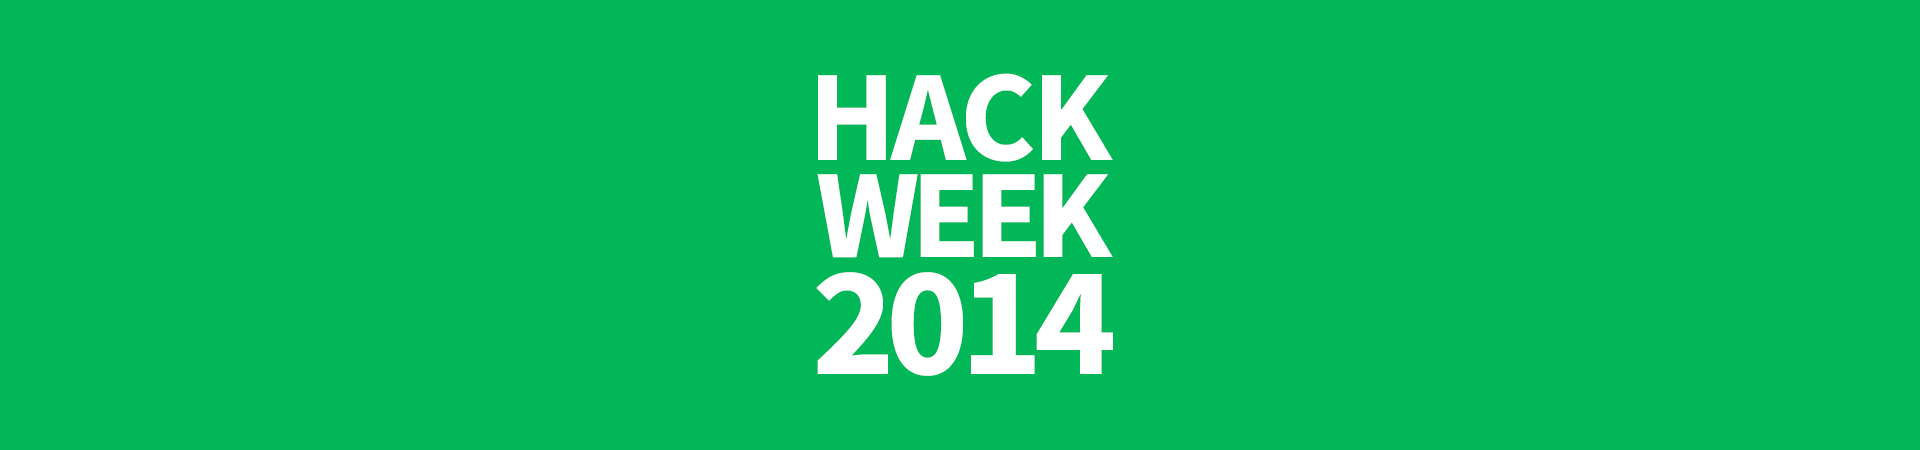 Behind The Scenes At Roblox Hack Week 2014 Roblox Blog